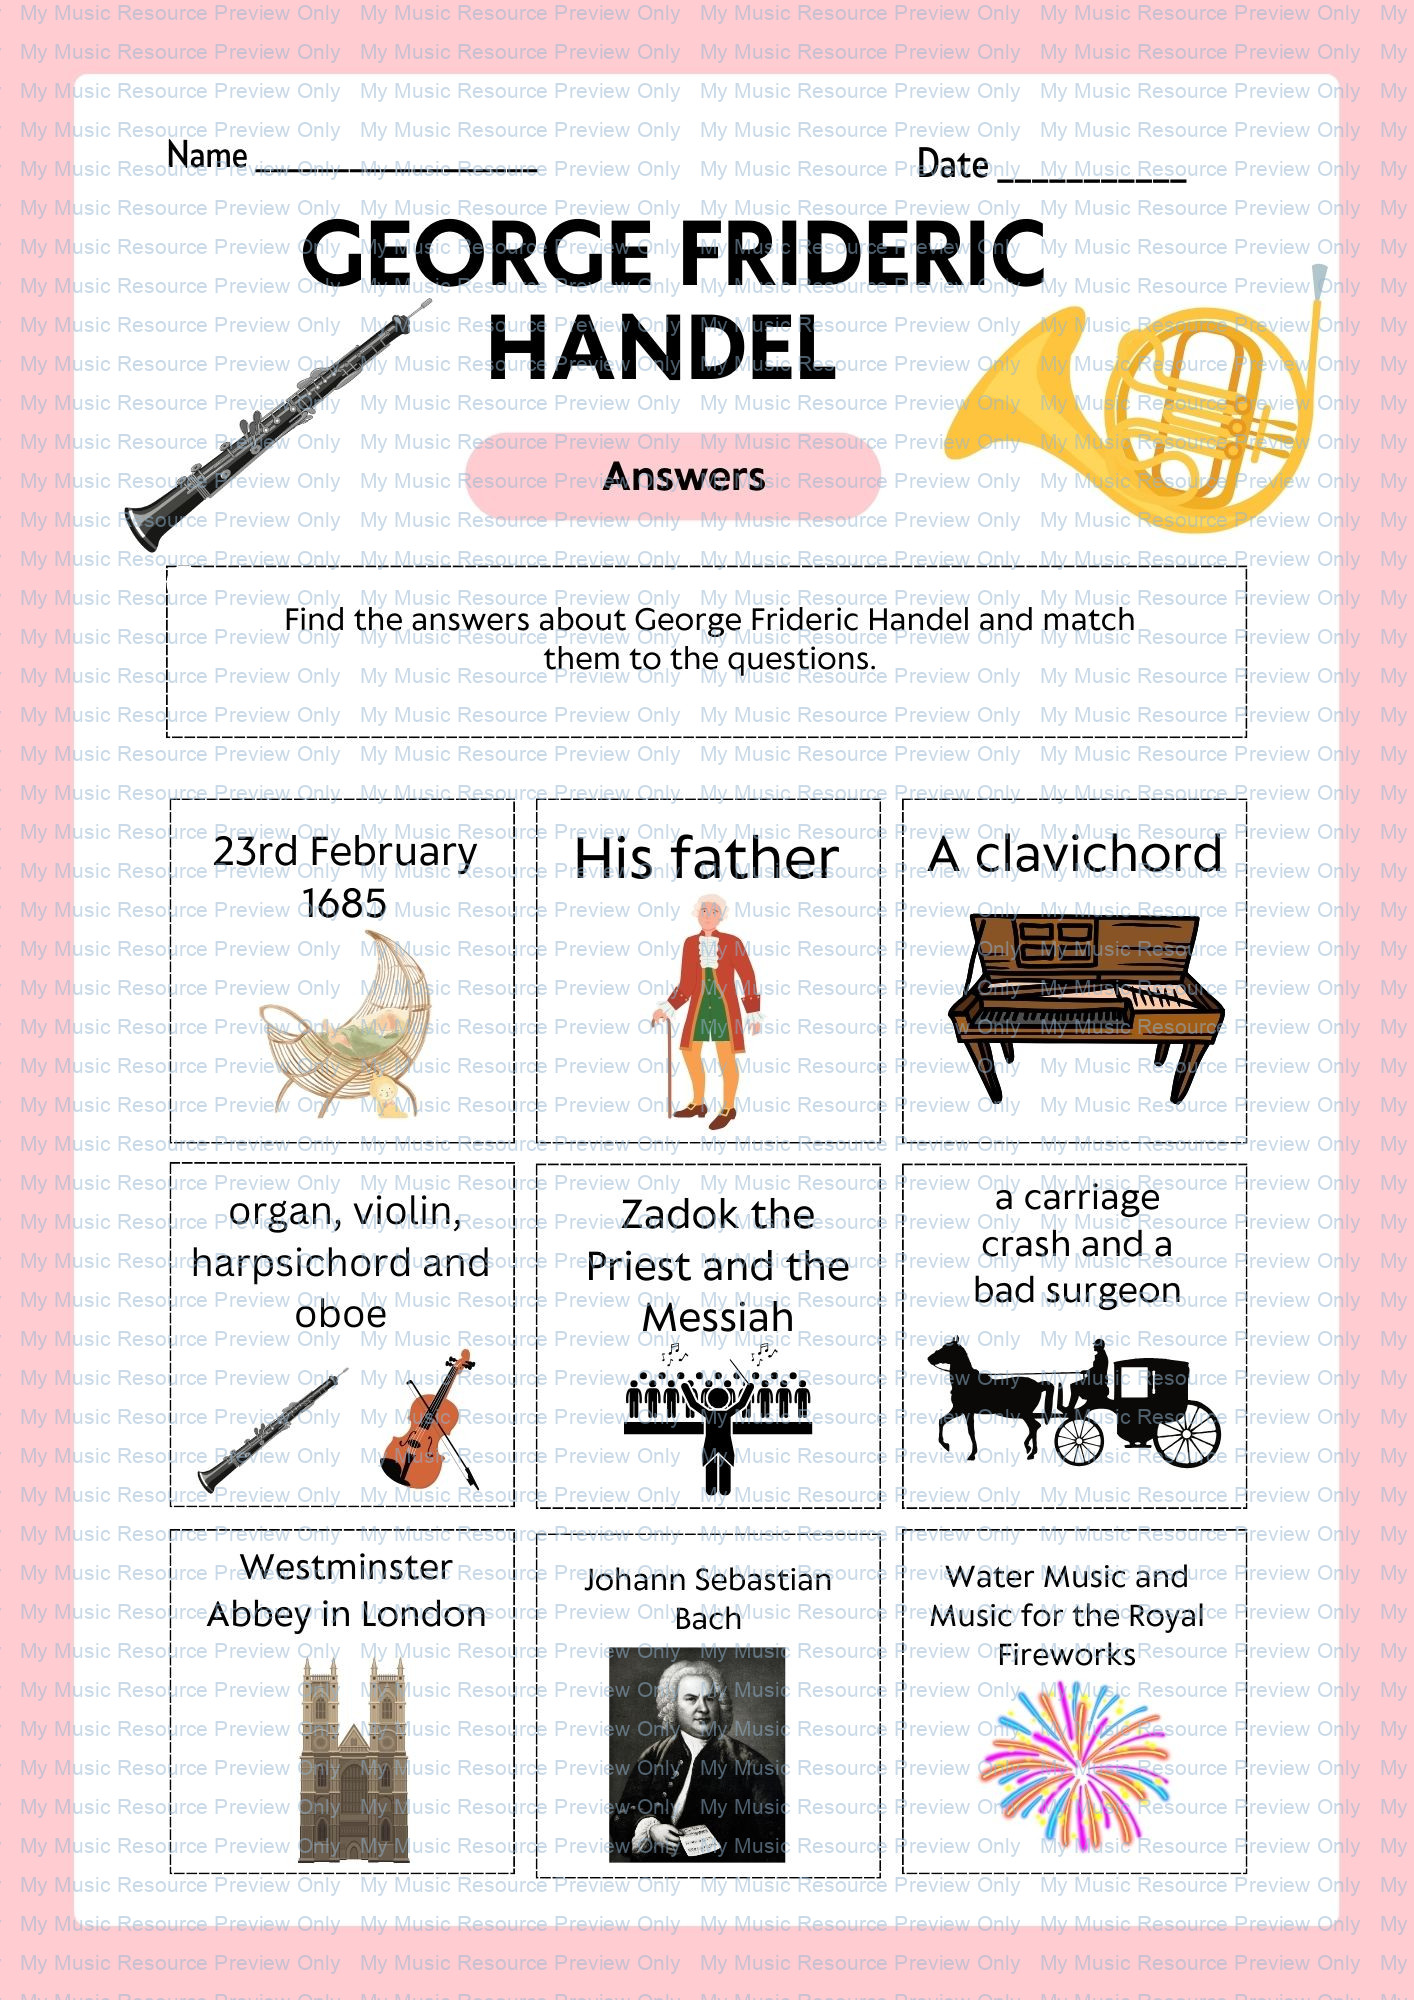 Handel's firework music